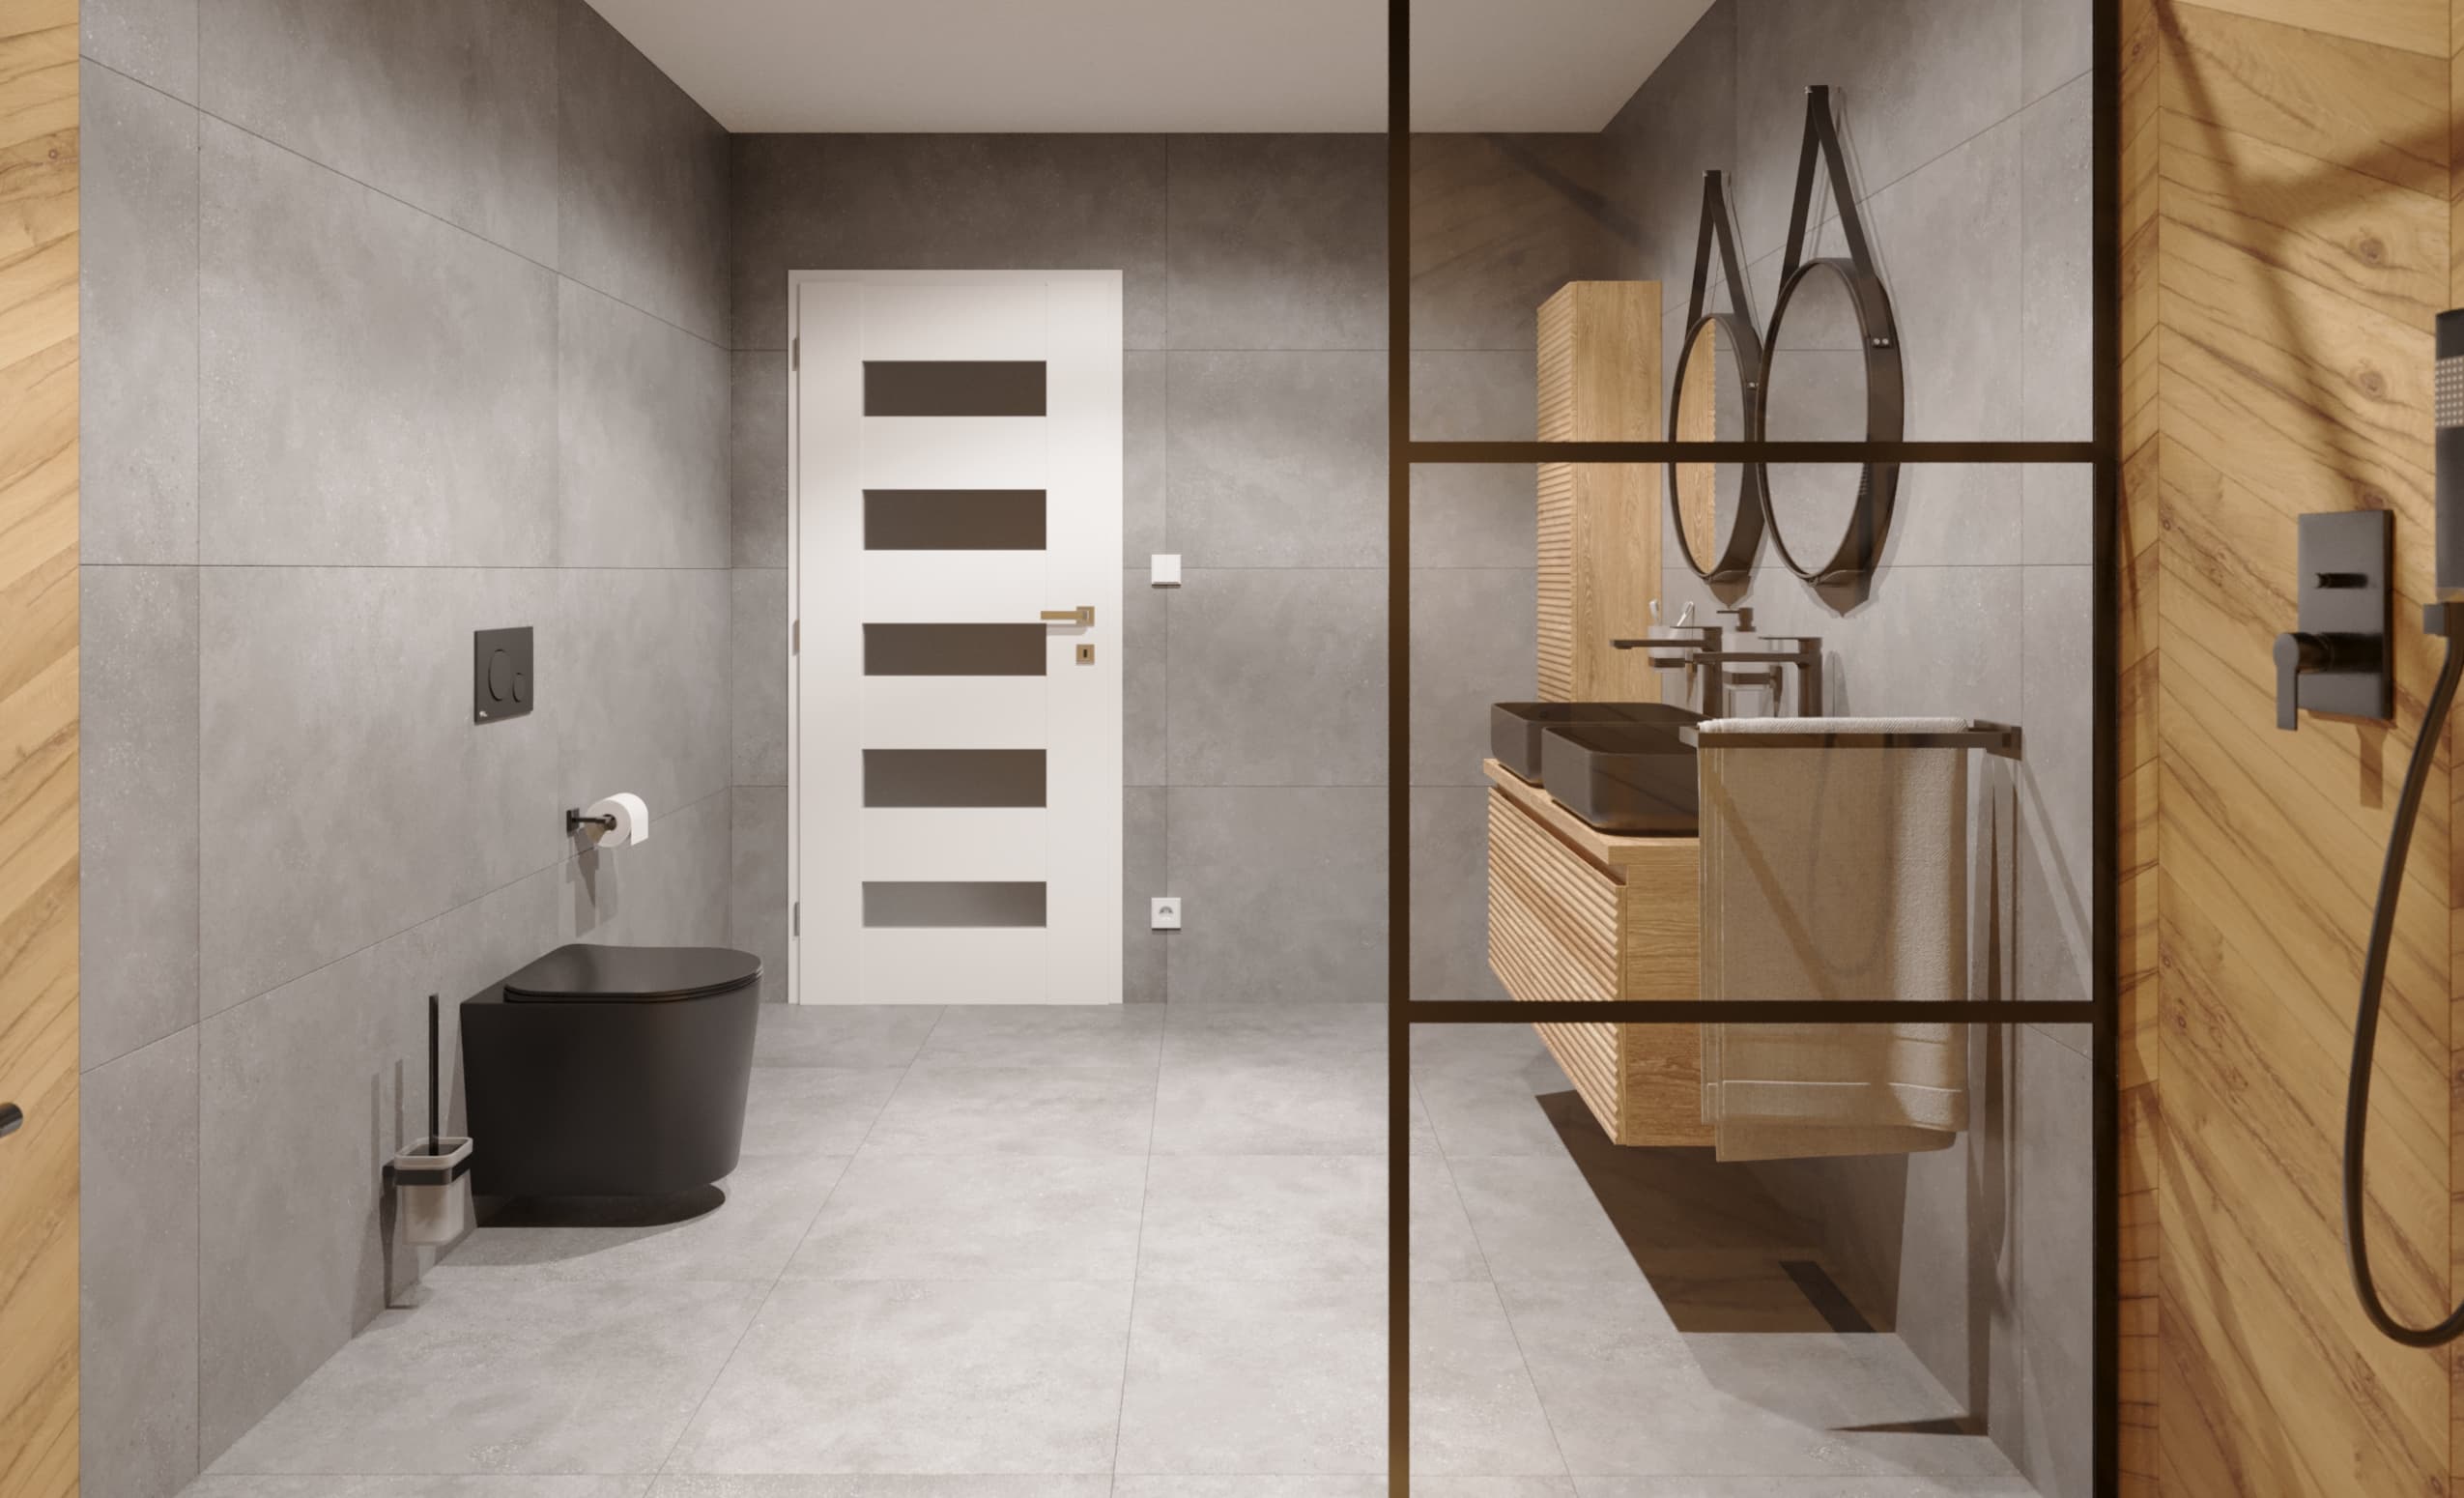 SIKO-koupelna-v-imitaci-betonu-d-eva-se-sprchovym-koutem-minimalisticky-styl-serie-Revival-003.jpg